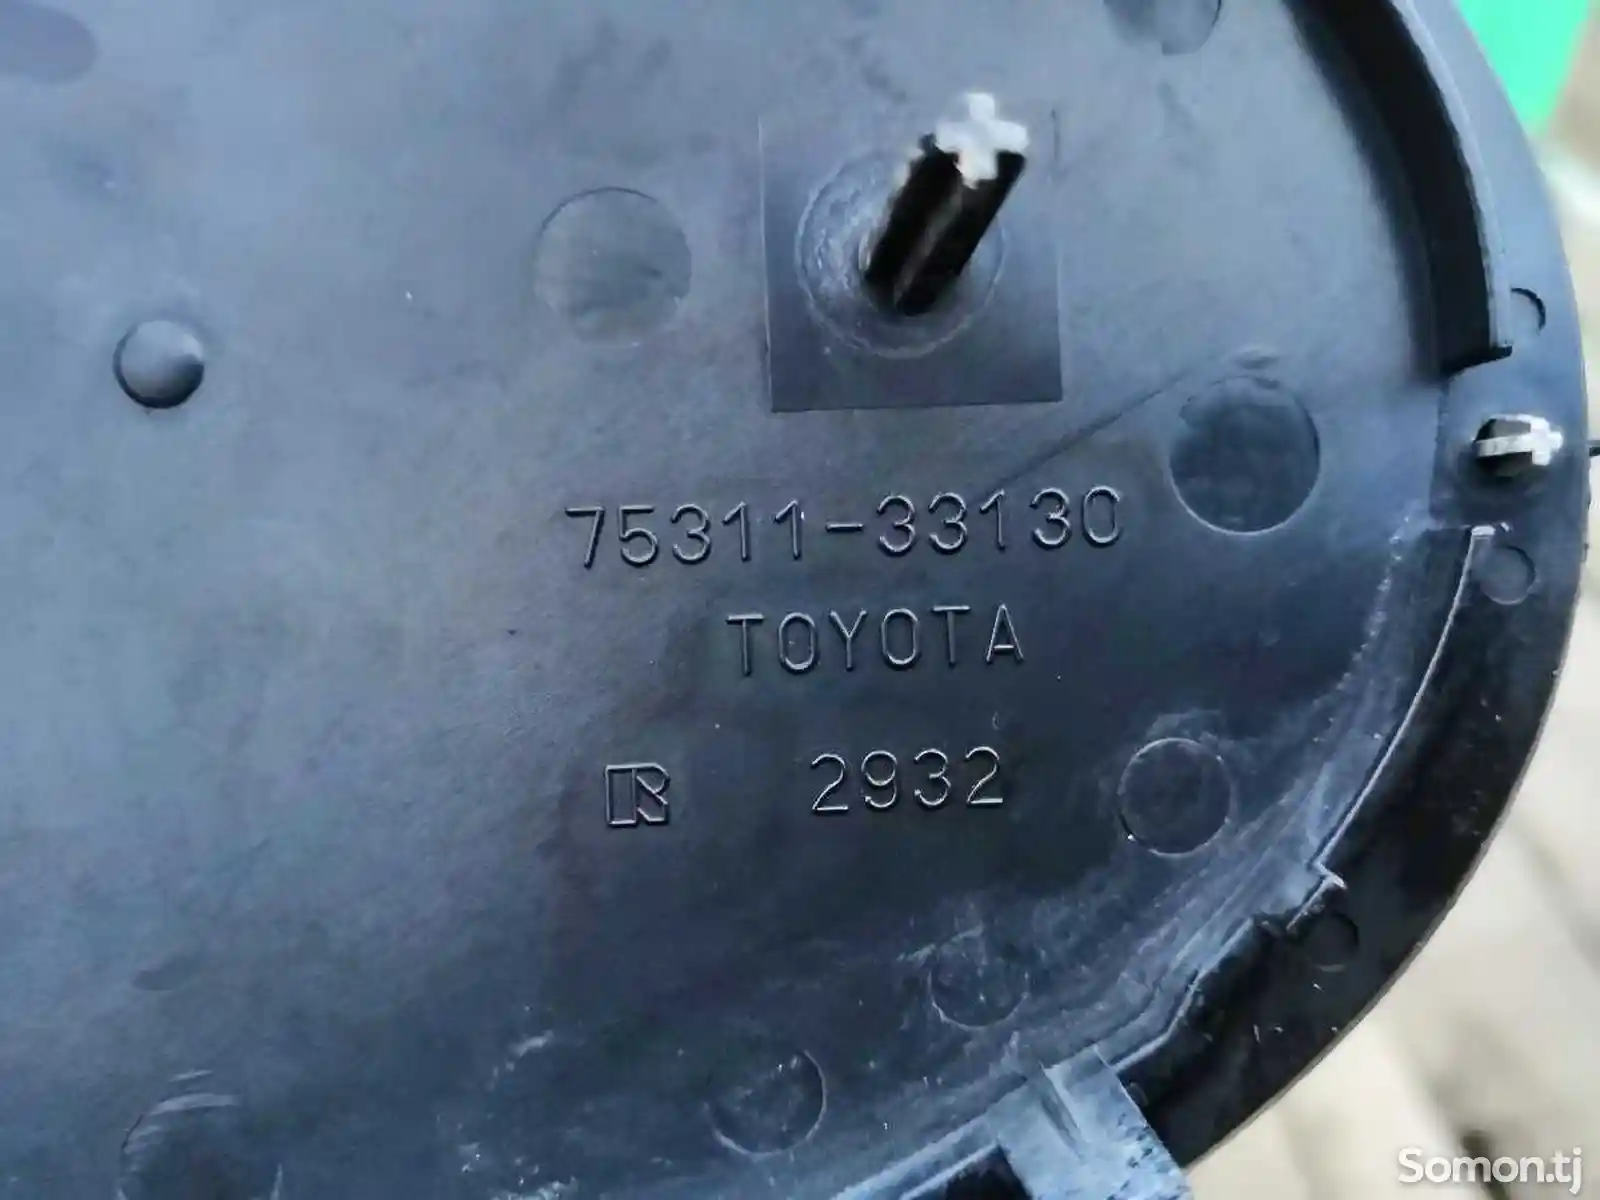 Значок Toyota-2